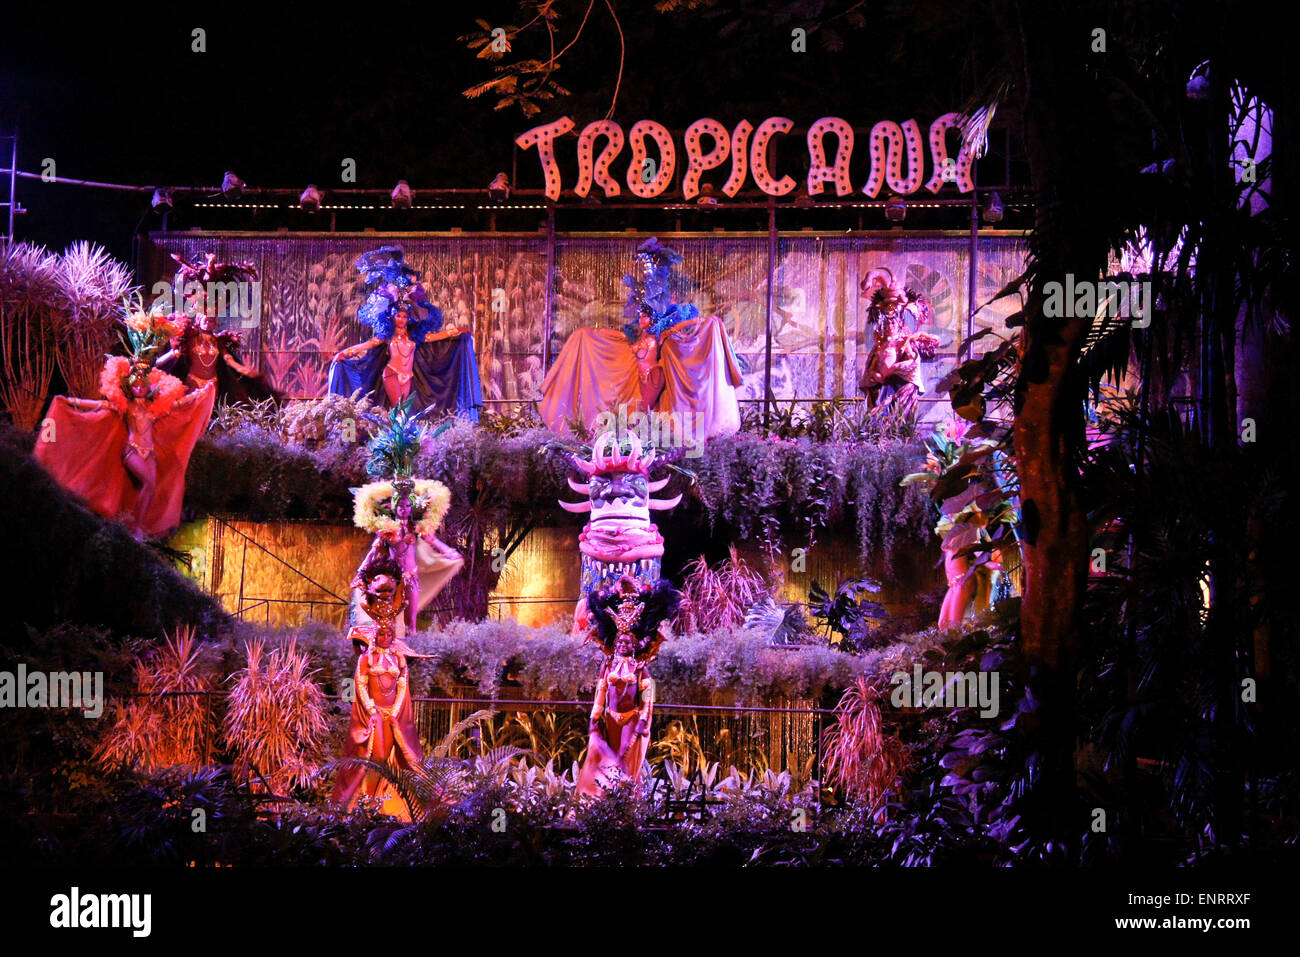 Les performances à l'Tropicana Club de La Havane, Cuba Banque D'Images